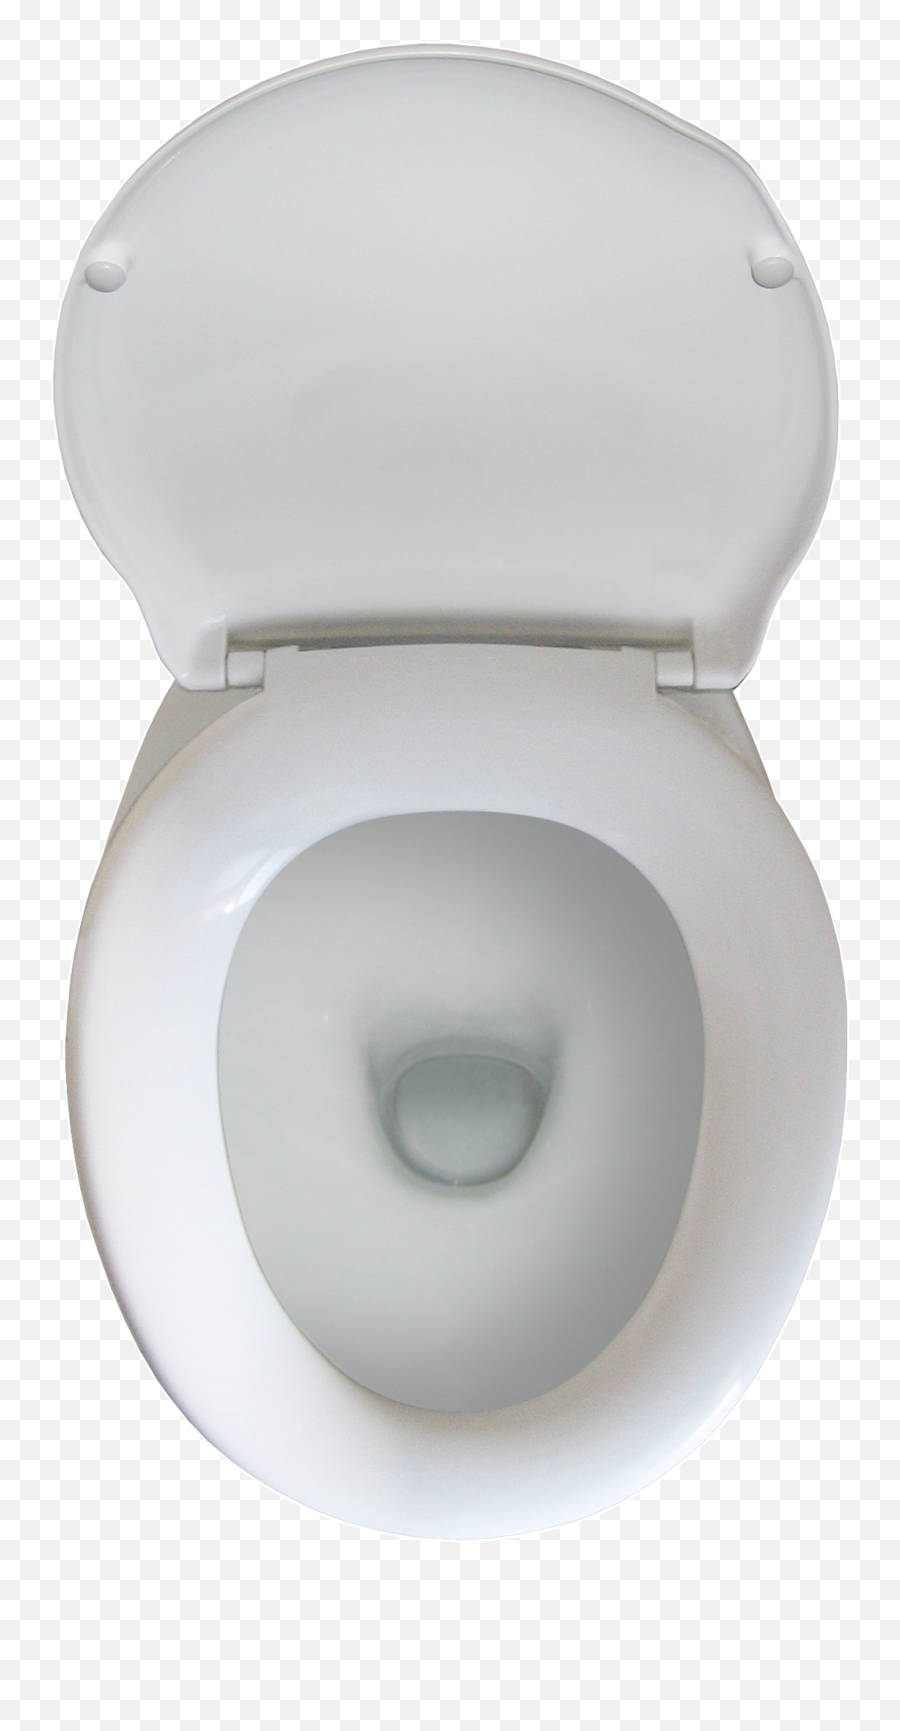 Toilet Bathroom Flush Bidet Seat Free - Toilet Commode Top View Png Emoji,Toilet Flush Emoticon